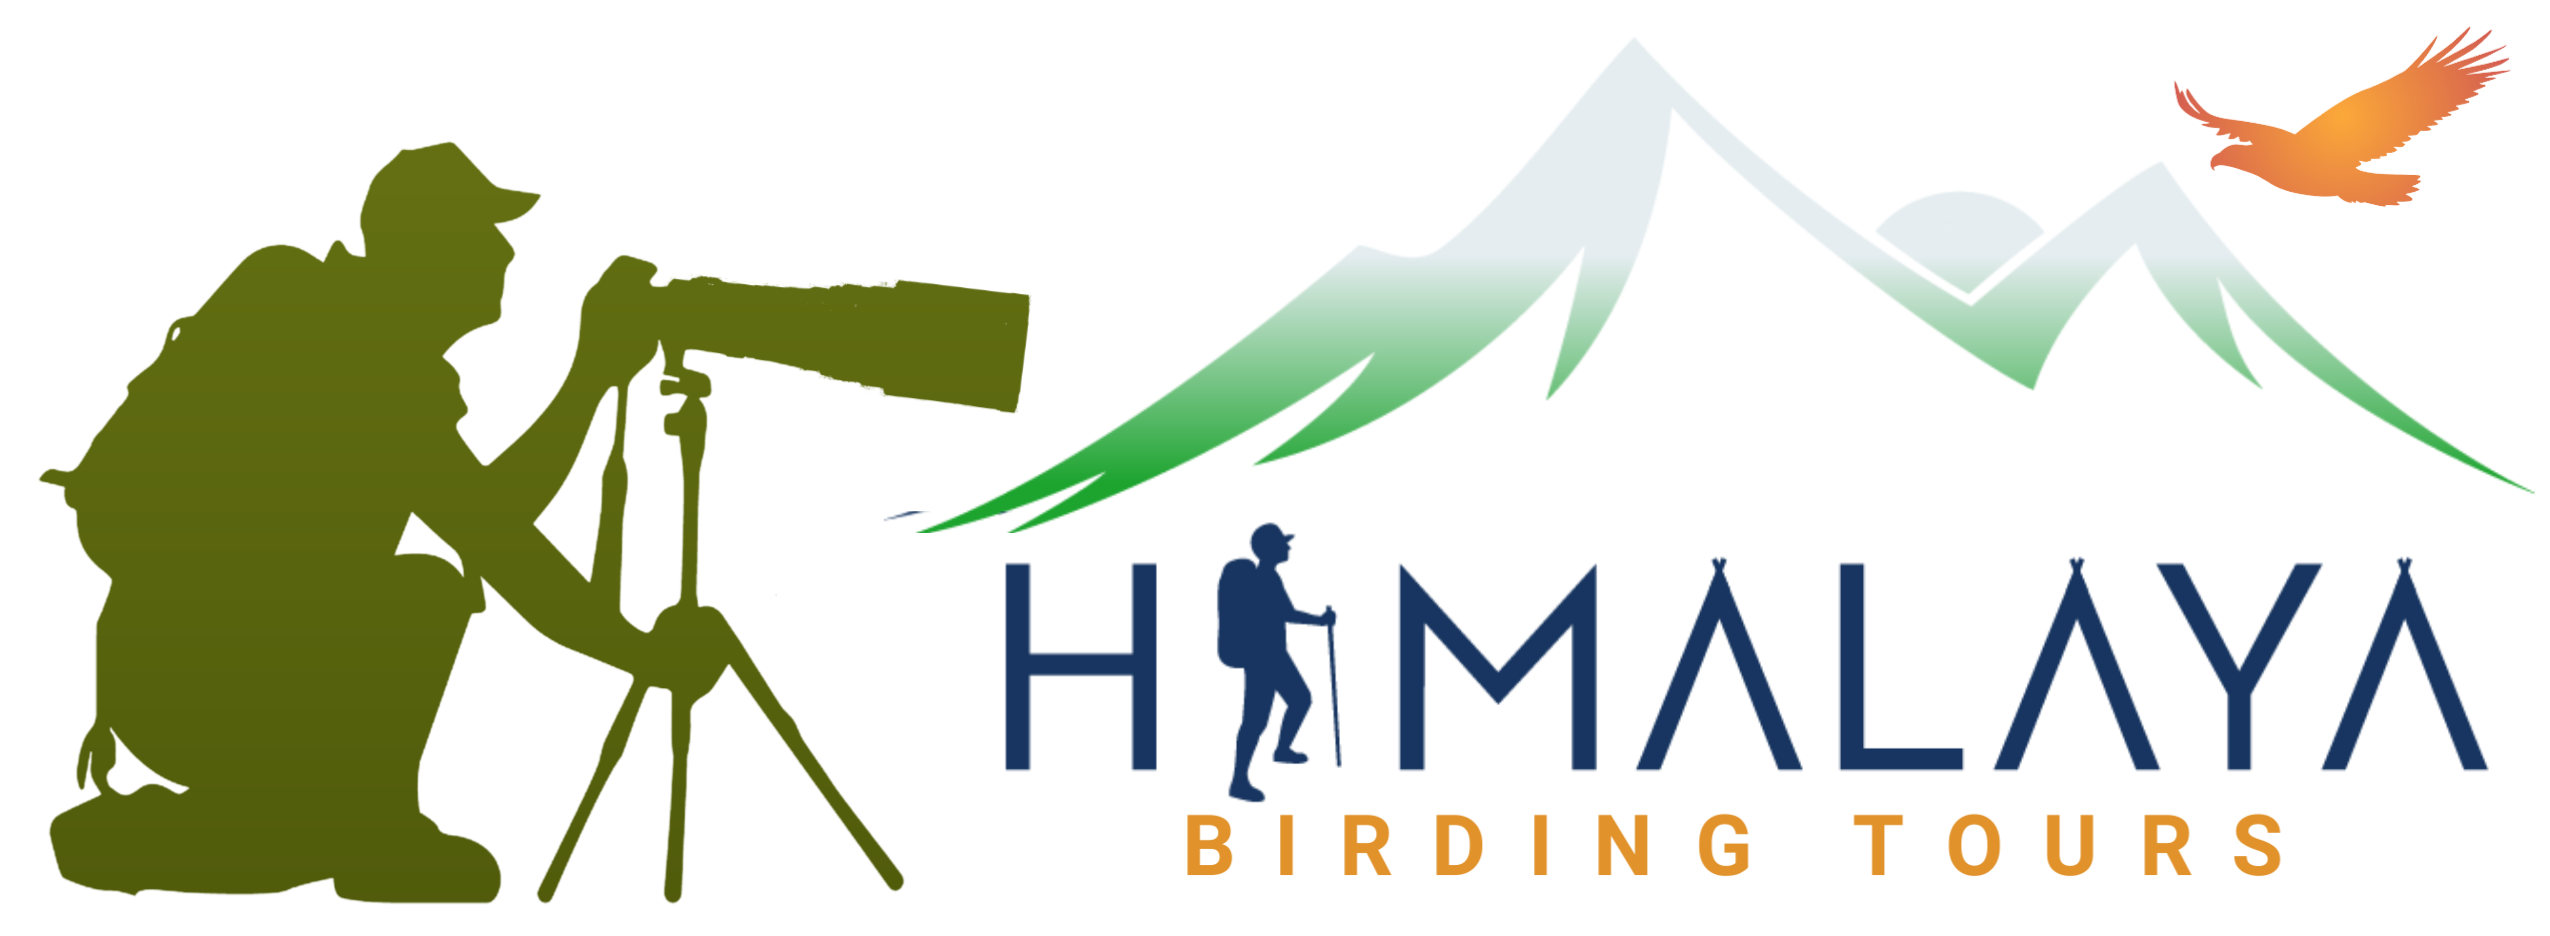 himalaya birding tours